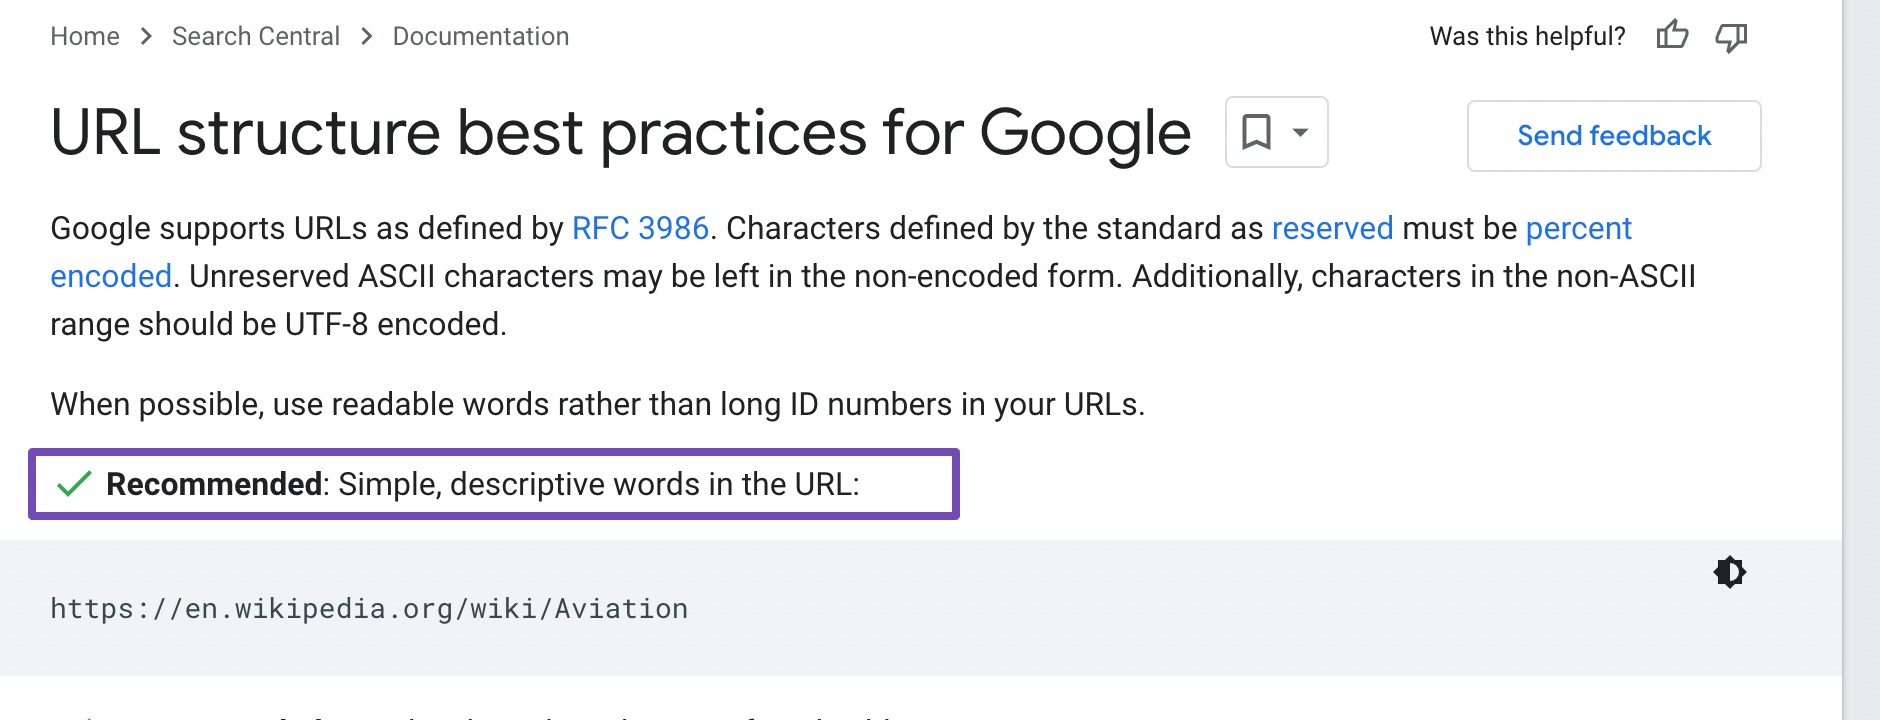 URL-Strukturrichtlinien von Google